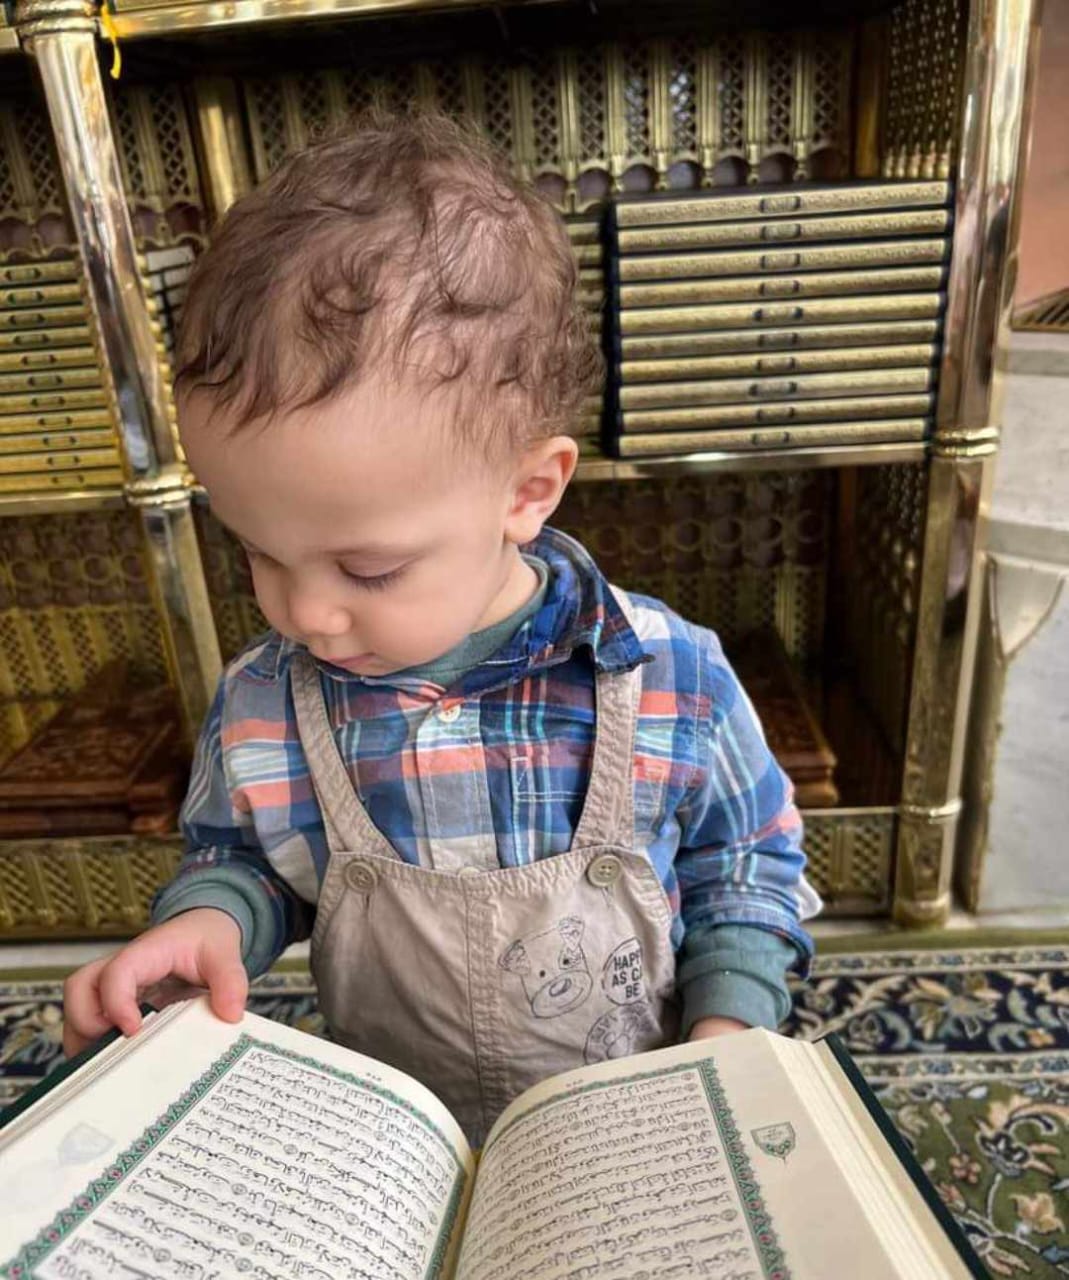 الطفل يحي أثناء تقليبه بصفحات المصحف بالمسجد النبوي